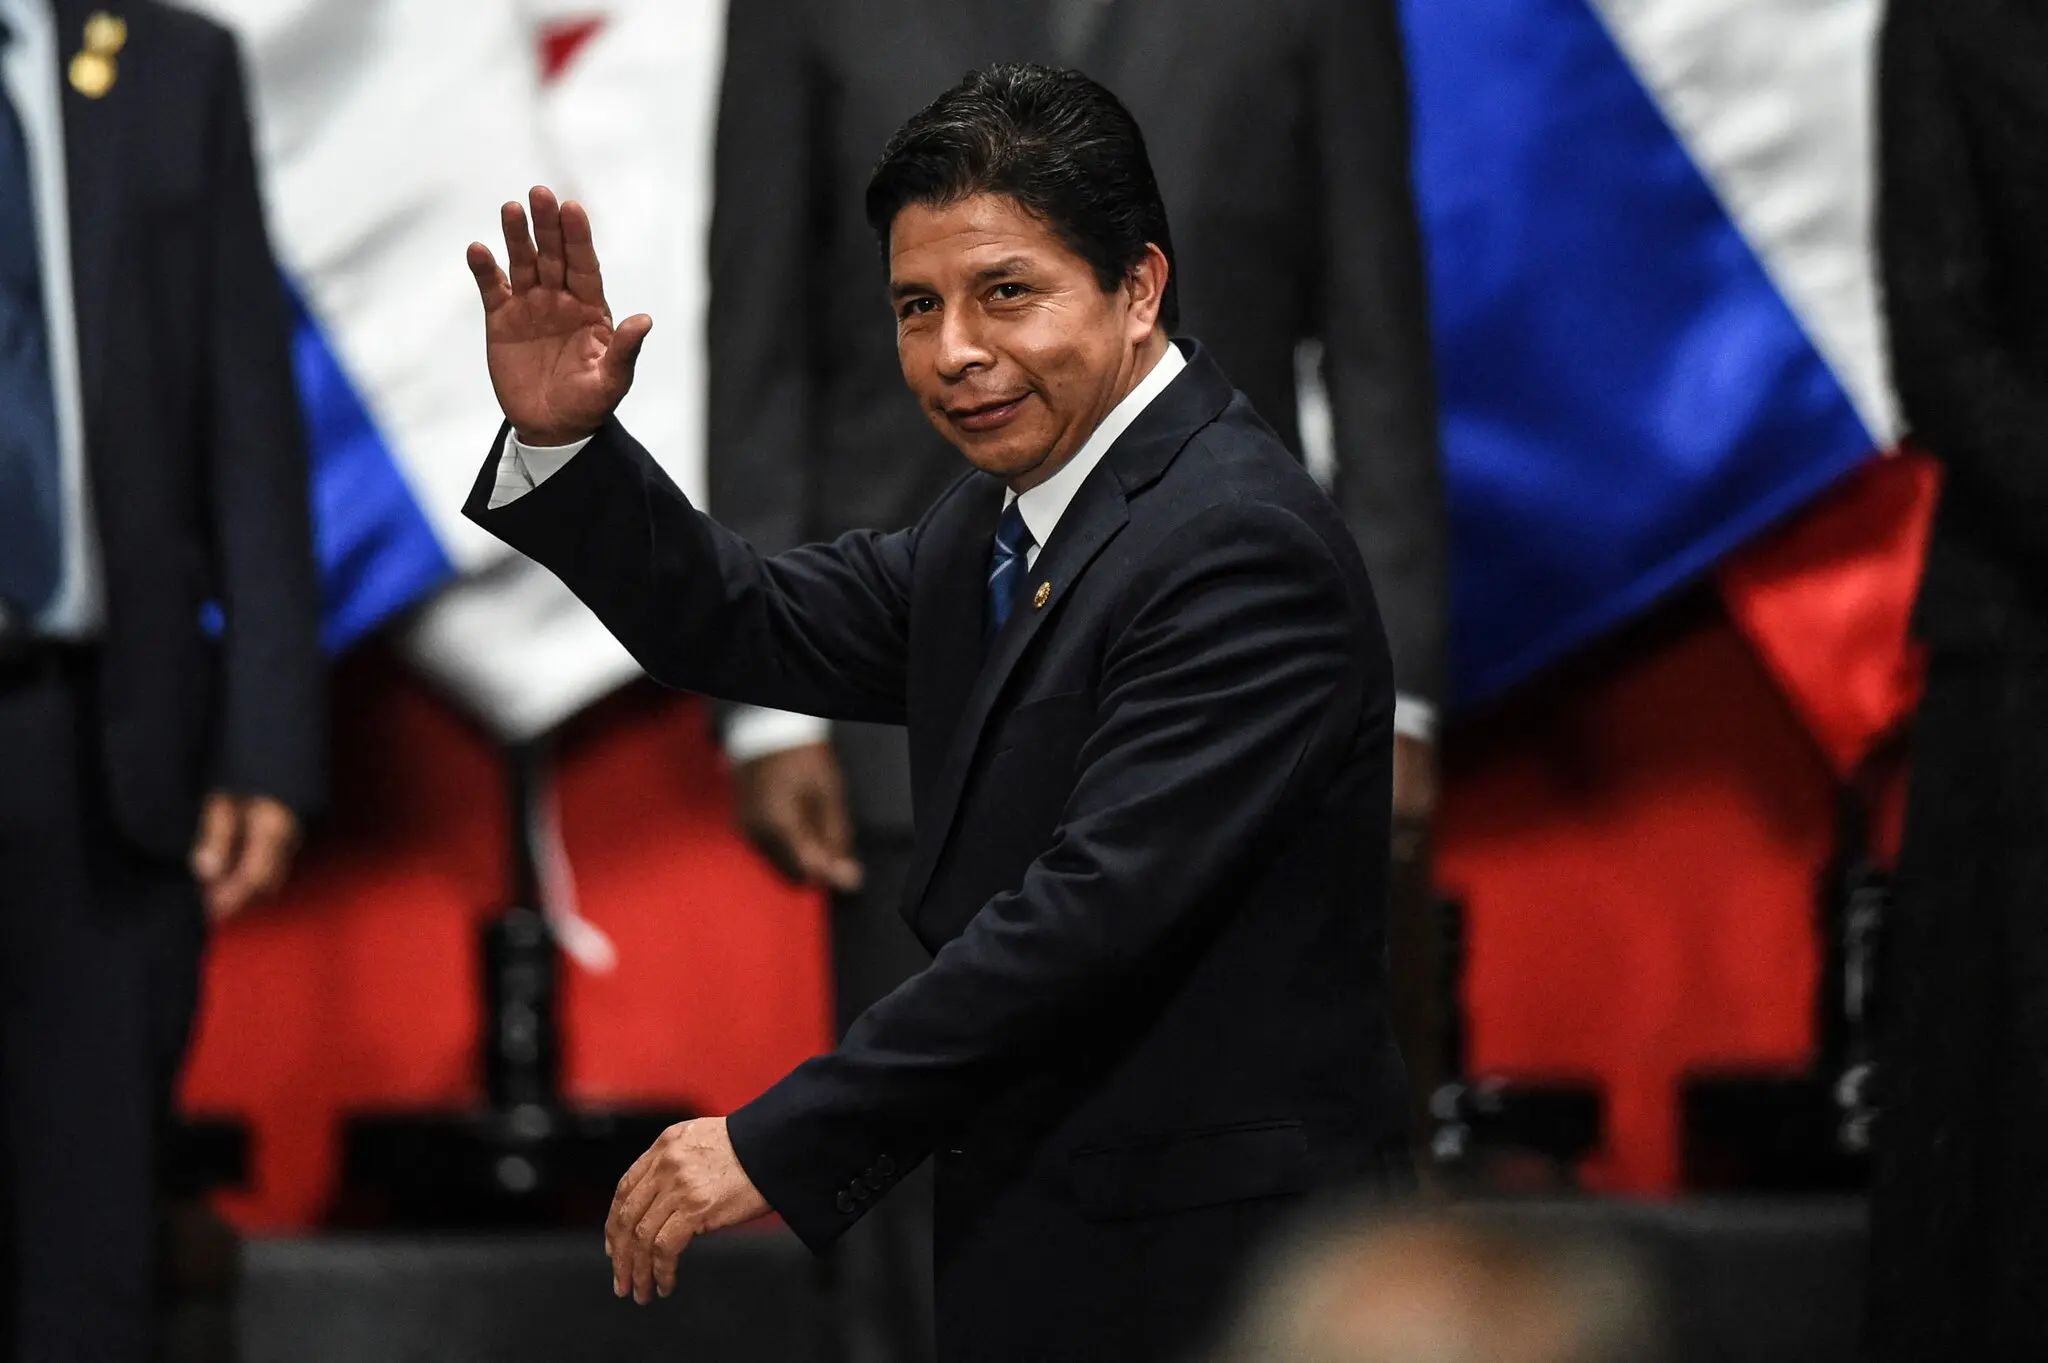 El presidente Pedro Castillo, en Lima, en octubre. Ahora se enfrenta a un tercer intento de juicio político en el Congreso. | Ernesto Benavides/Agence France-Presse — Getty Images